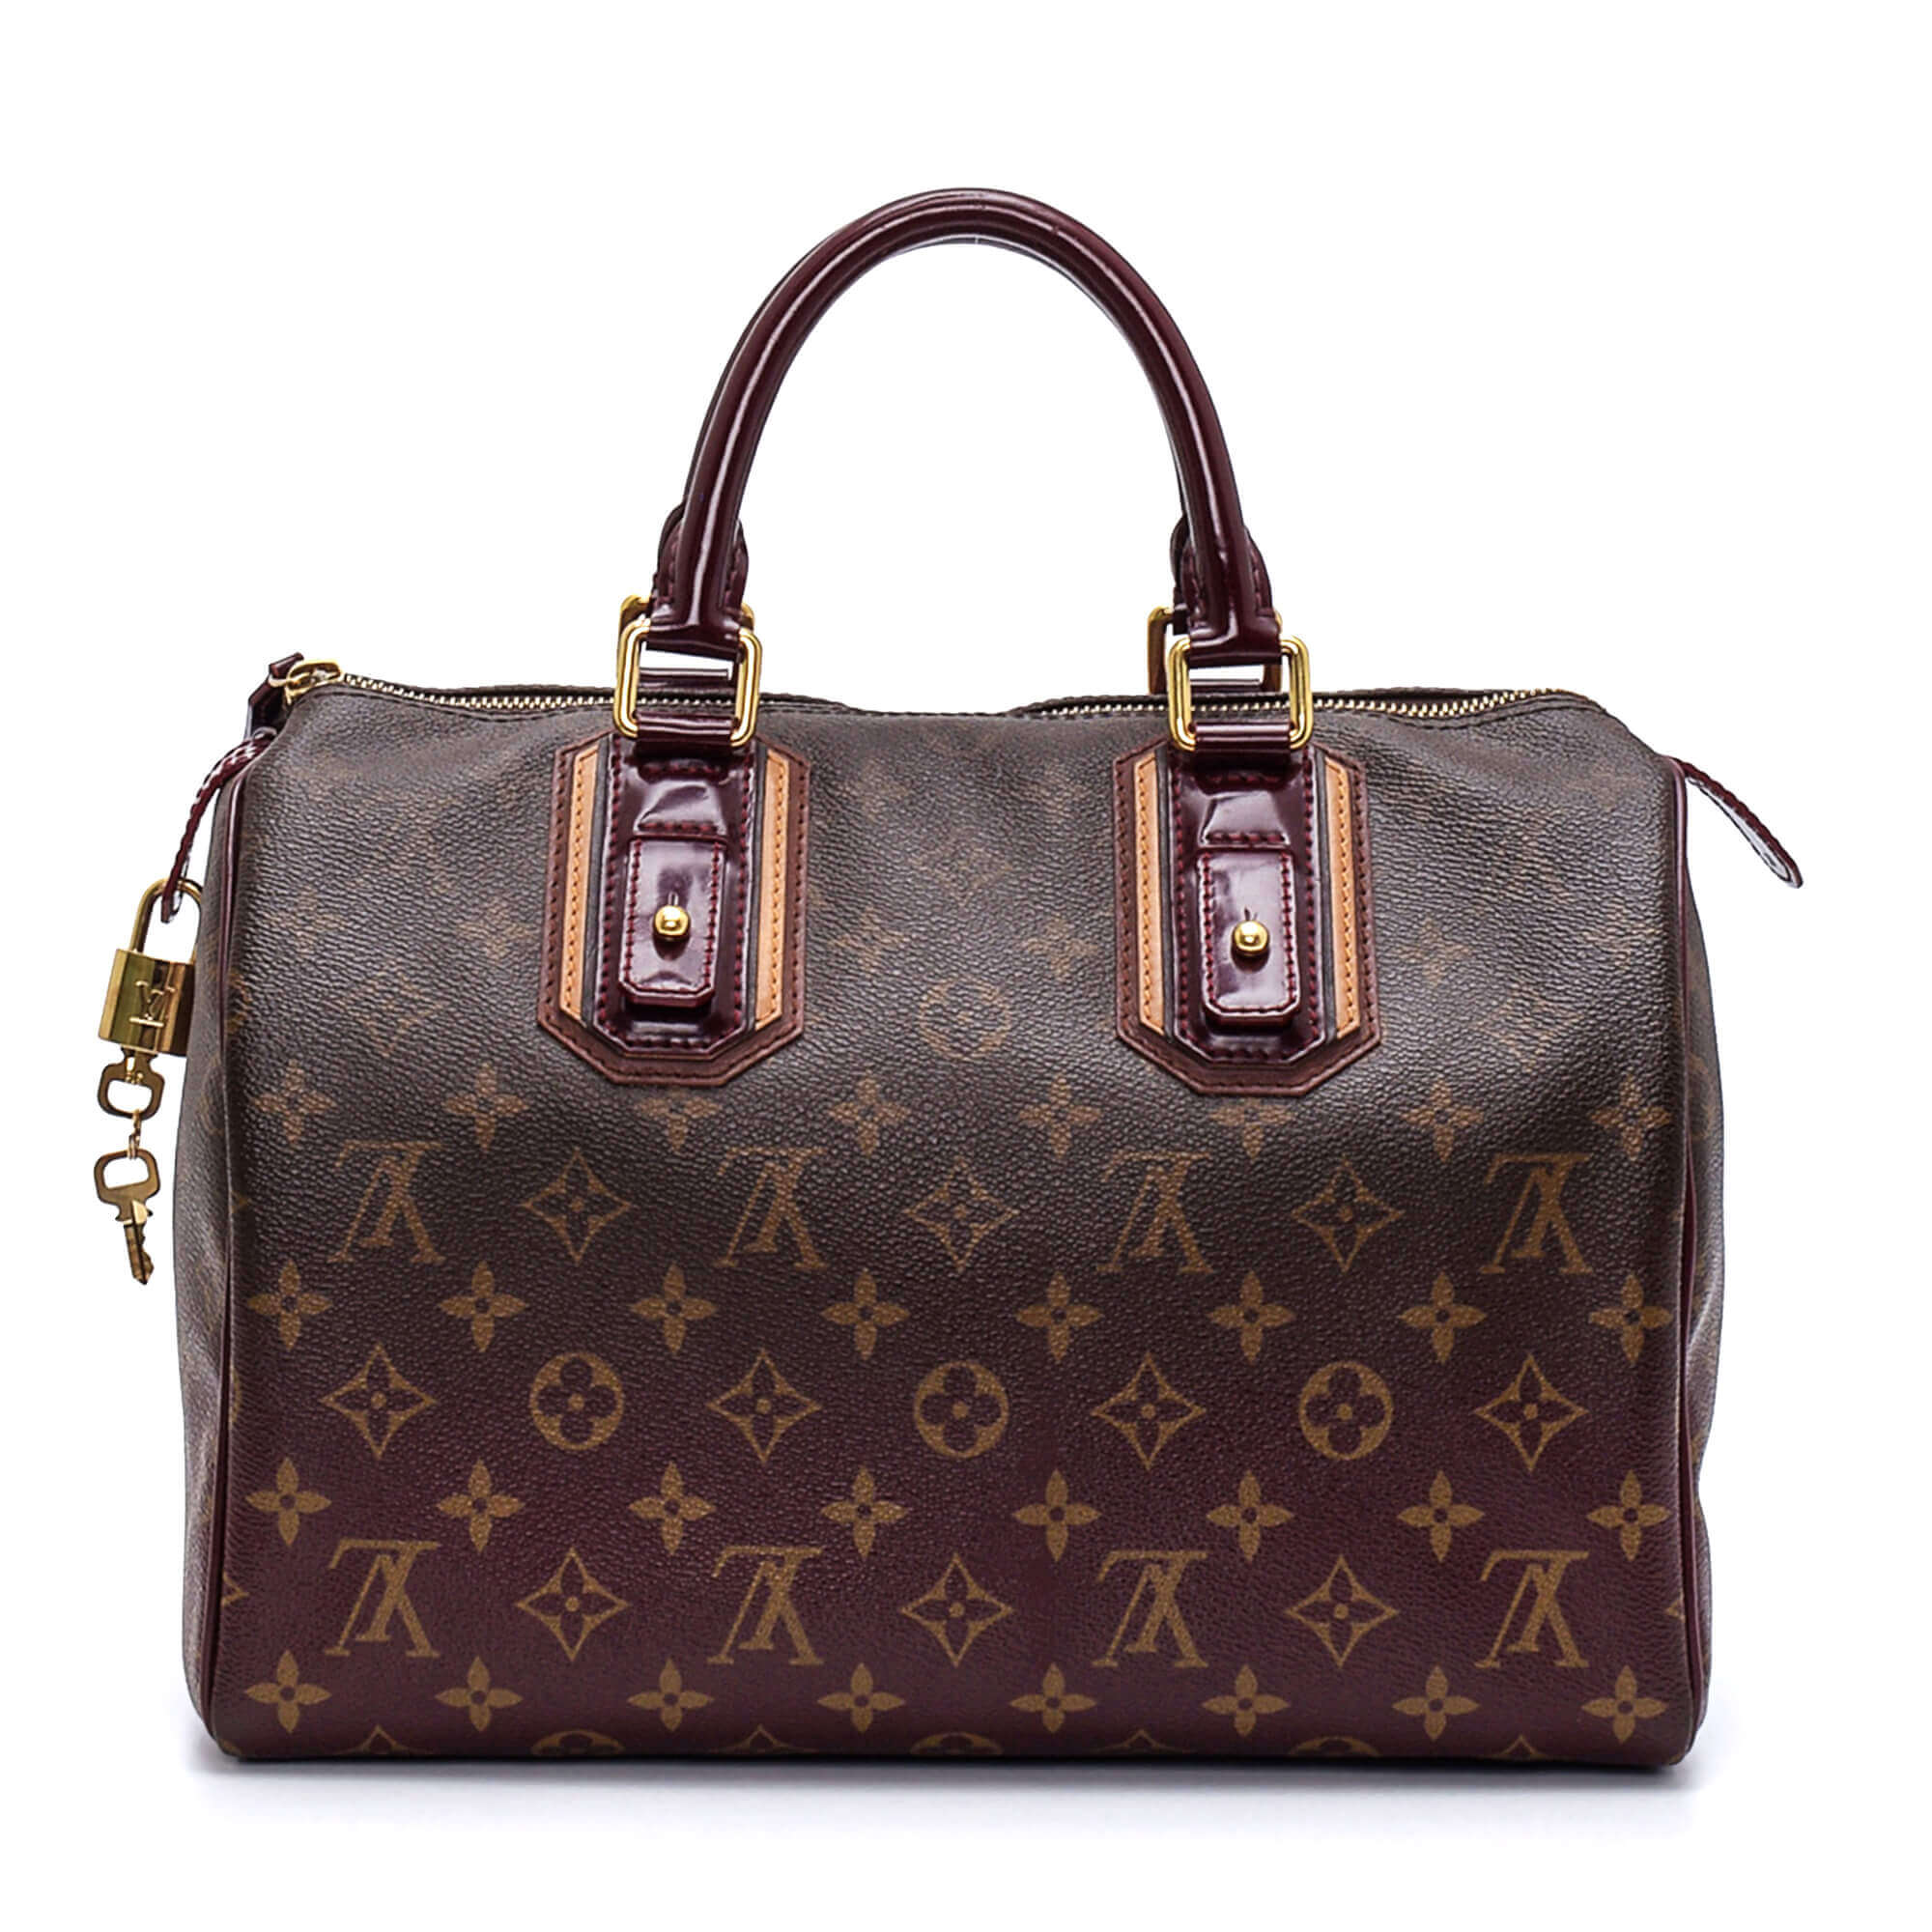 Louis Vuitton - Bordeaux Leather & Monogram Canvas Mirage Limited Edition Speedy 30 Bag